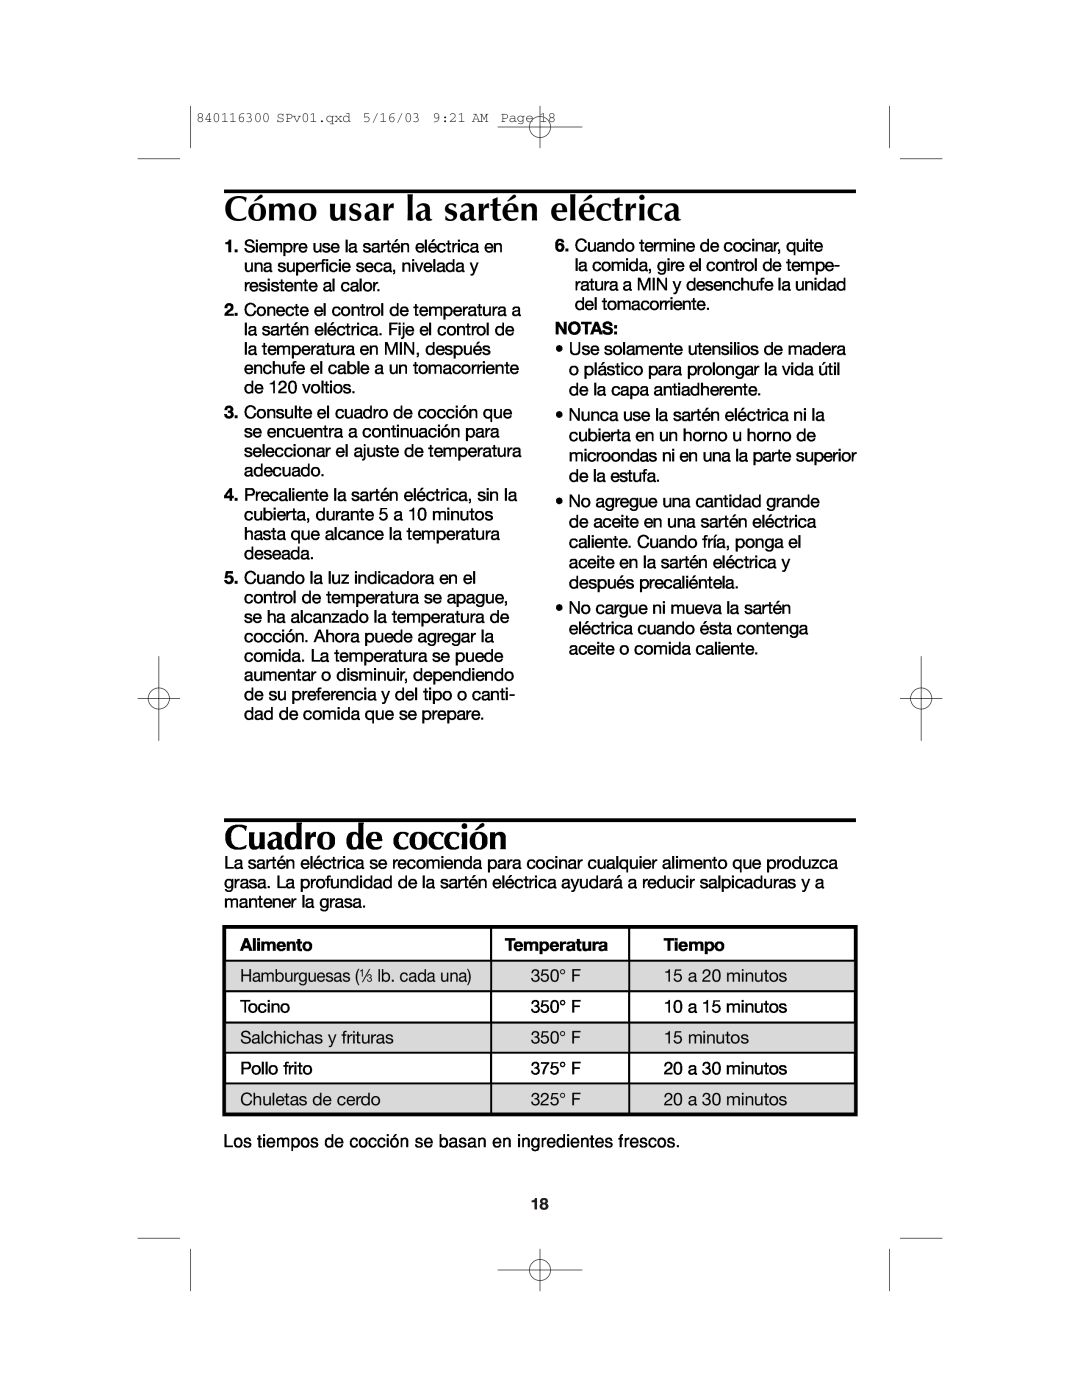 Proctor-Silex 840116300 manual Cómo usar la sartén eléctrica, Cuadro de cocción, Notas, Alimento, Temperatura, Tiempo 